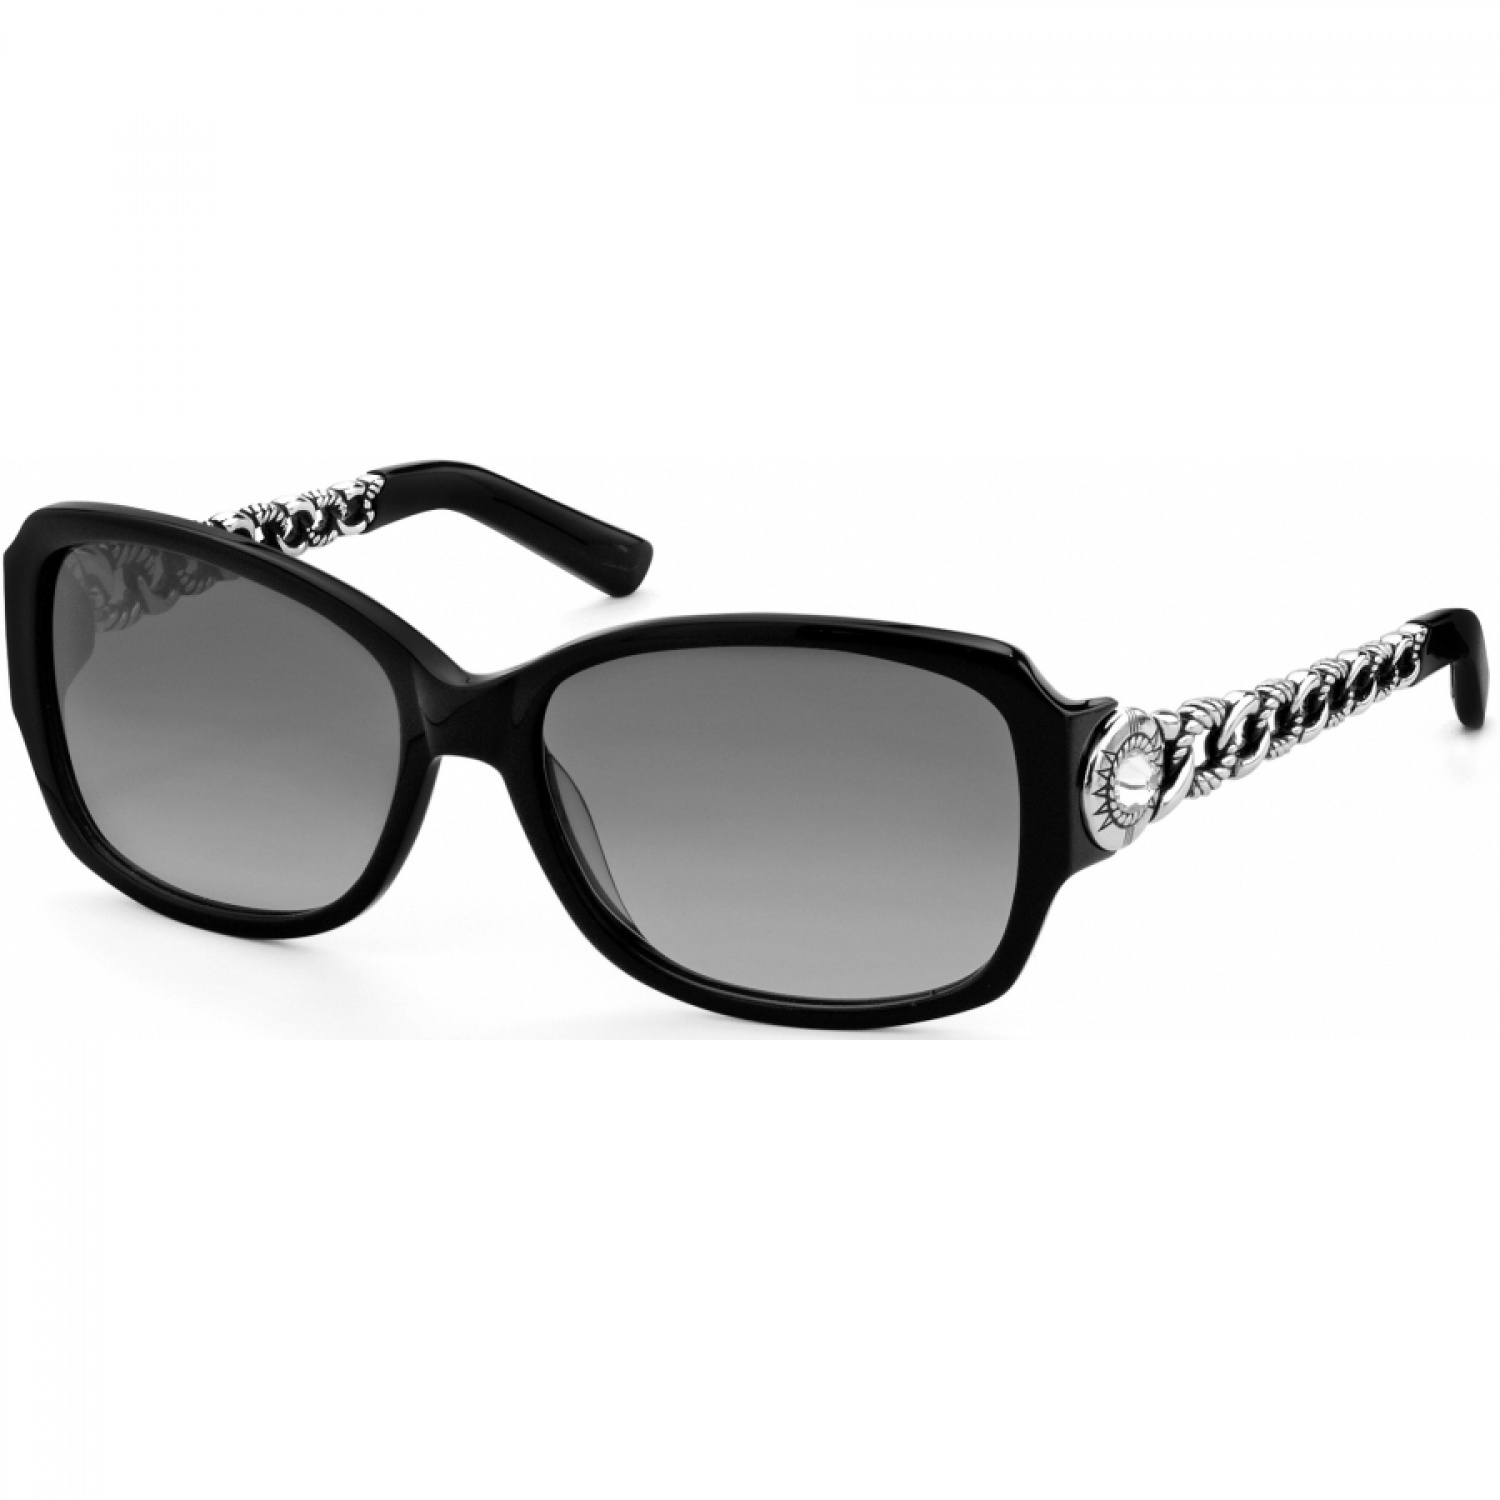 Fortino Fortino Sunglasses Sunglasses